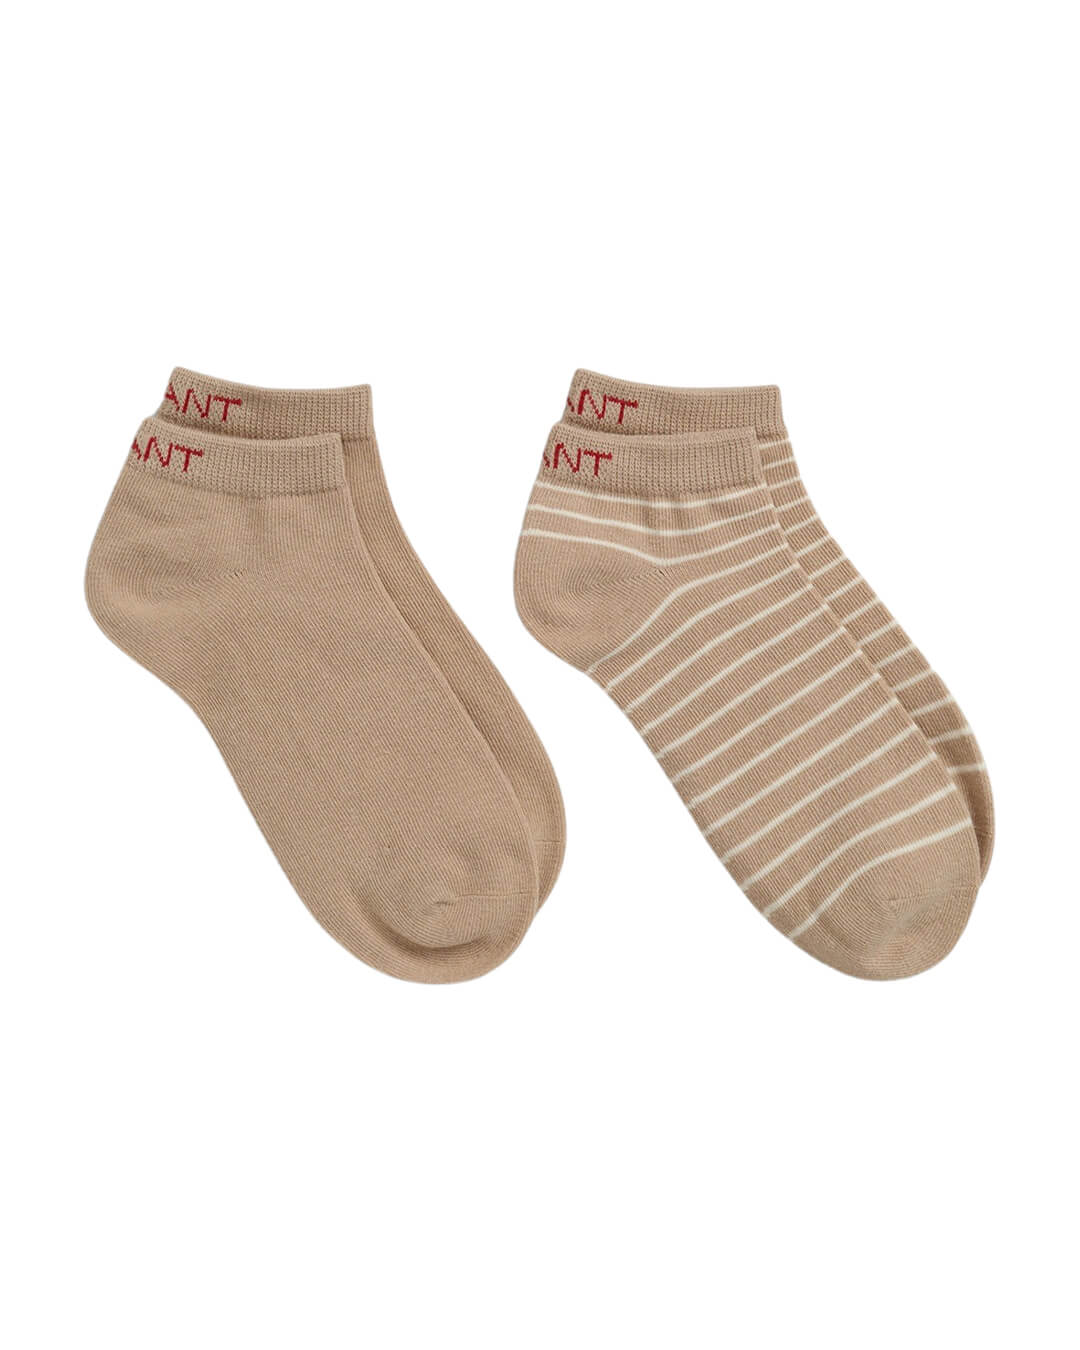 Gant Socks Gant Sand 2-Pack Breton Stripe Ankle Socks